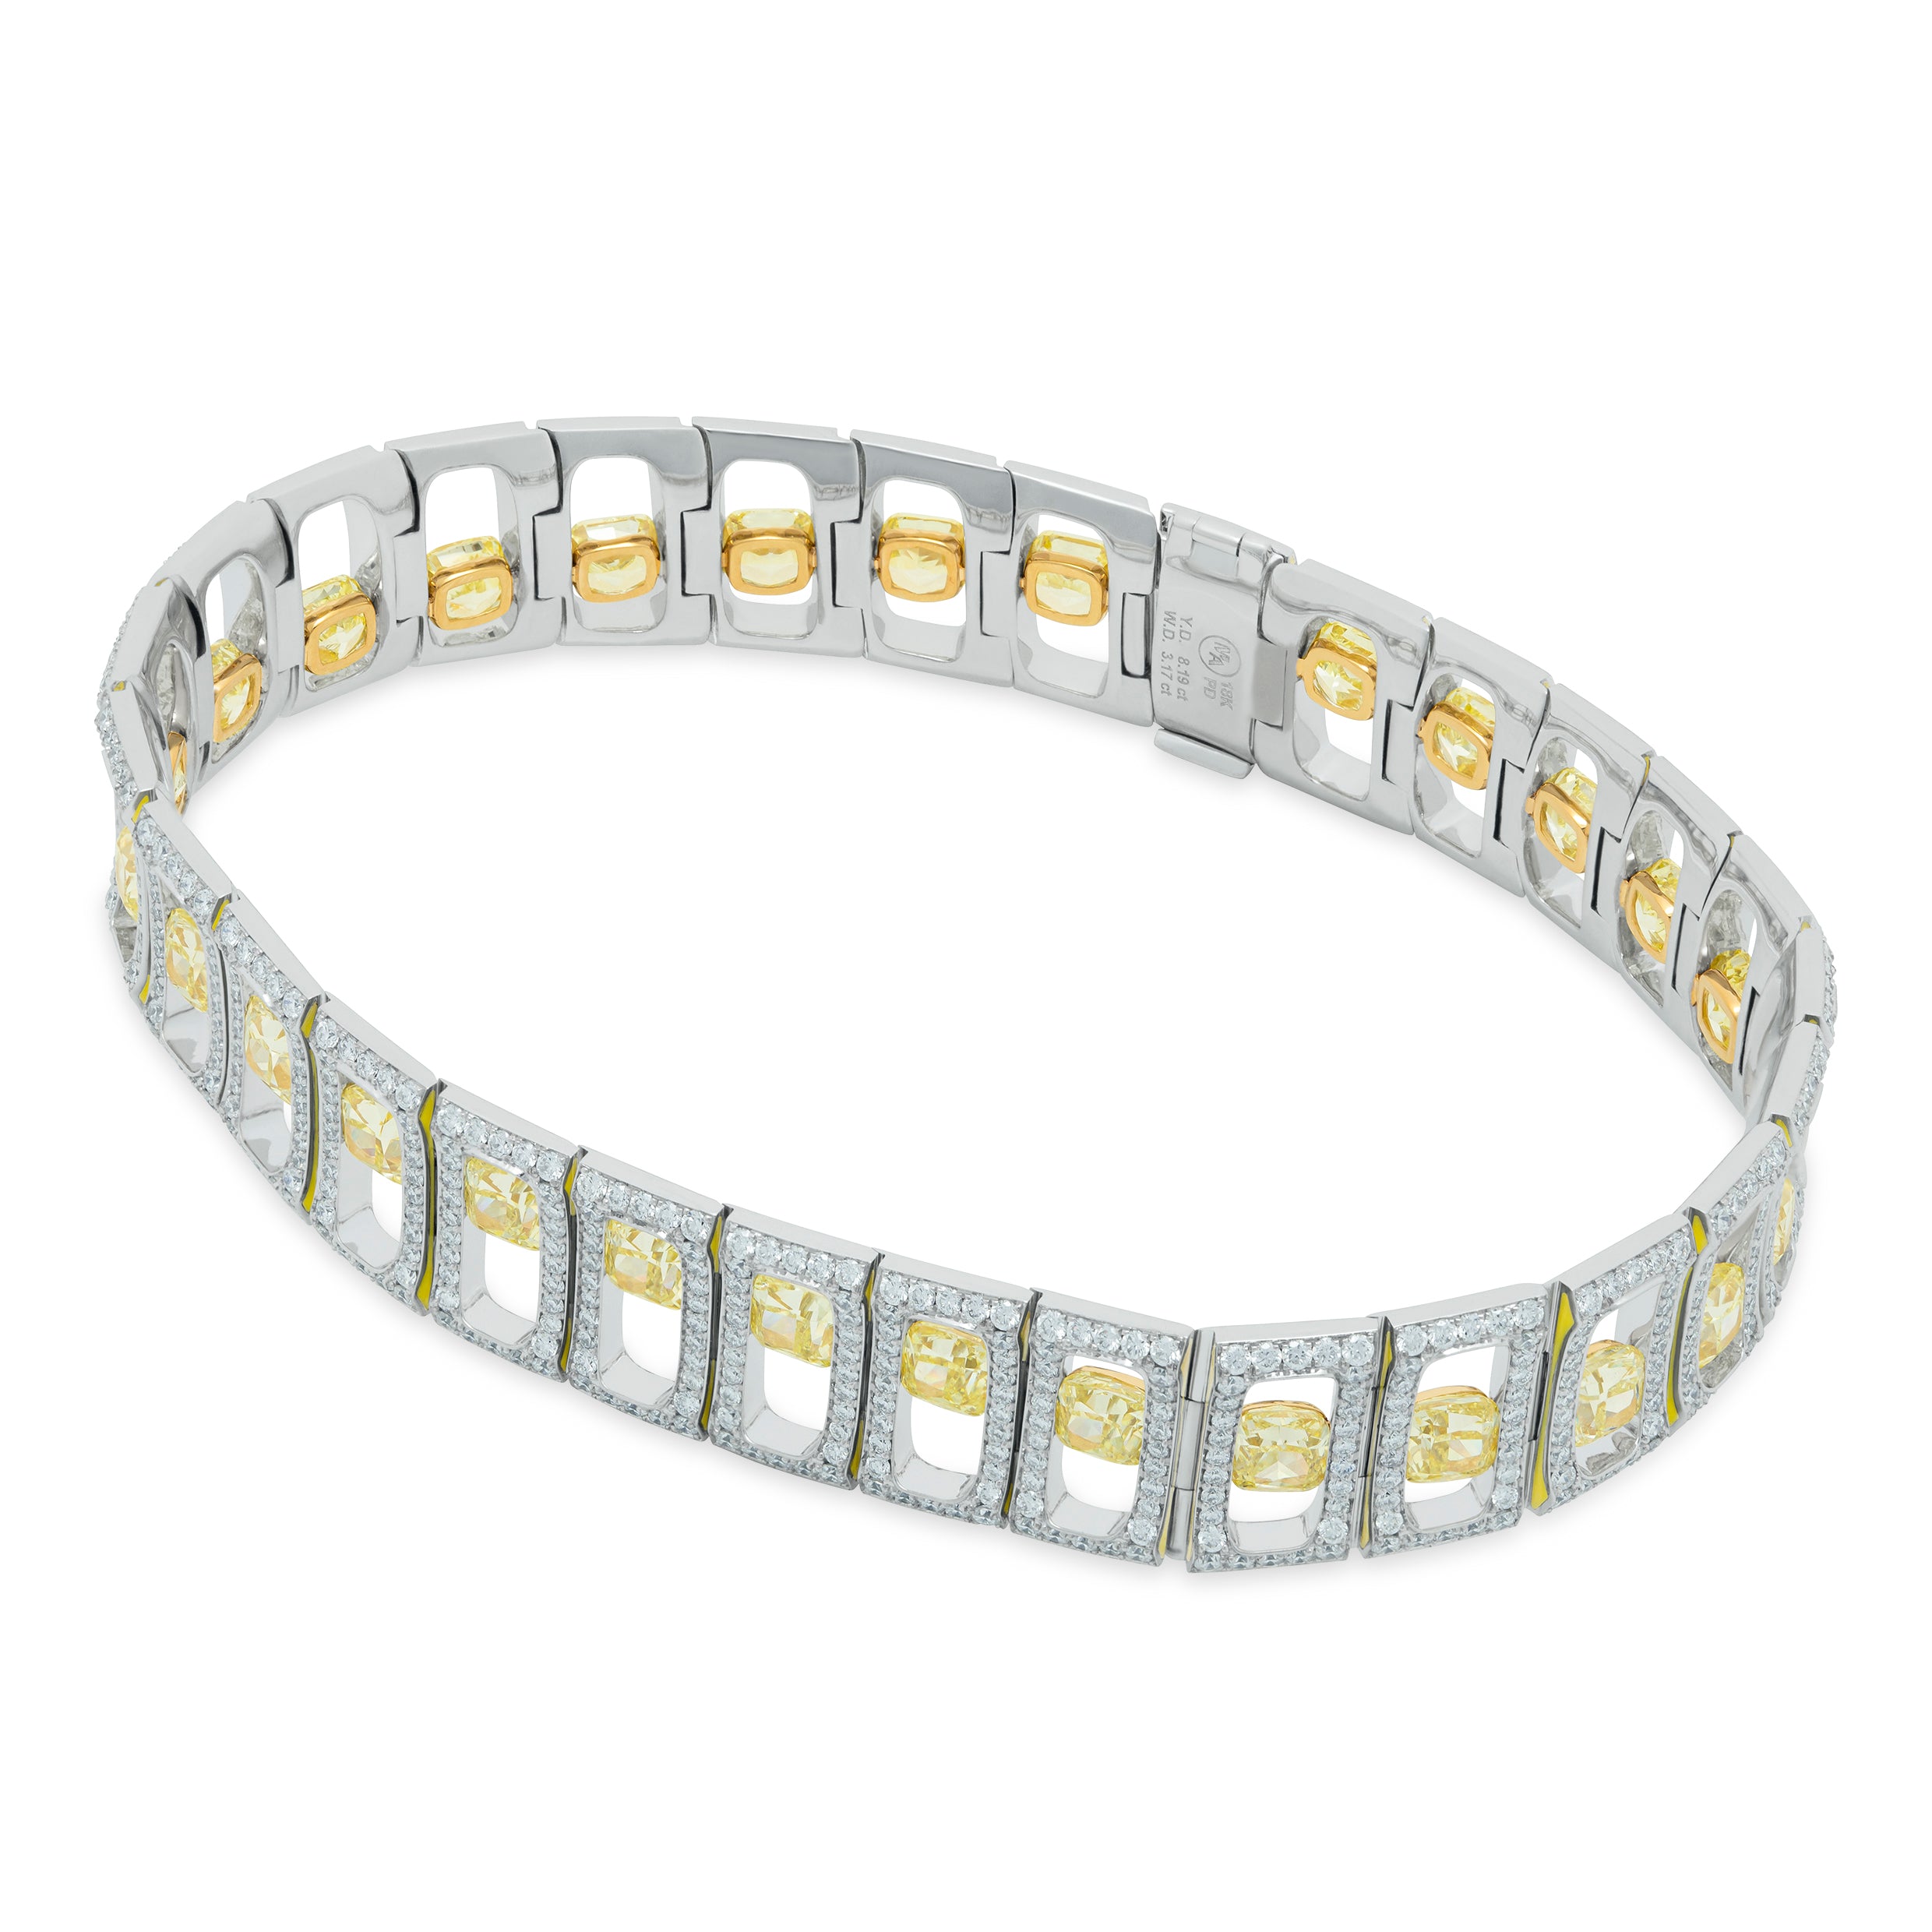 Br 0226-0/1 18K White Gold, Enamel, White and Yellow Diamonds Bracelet